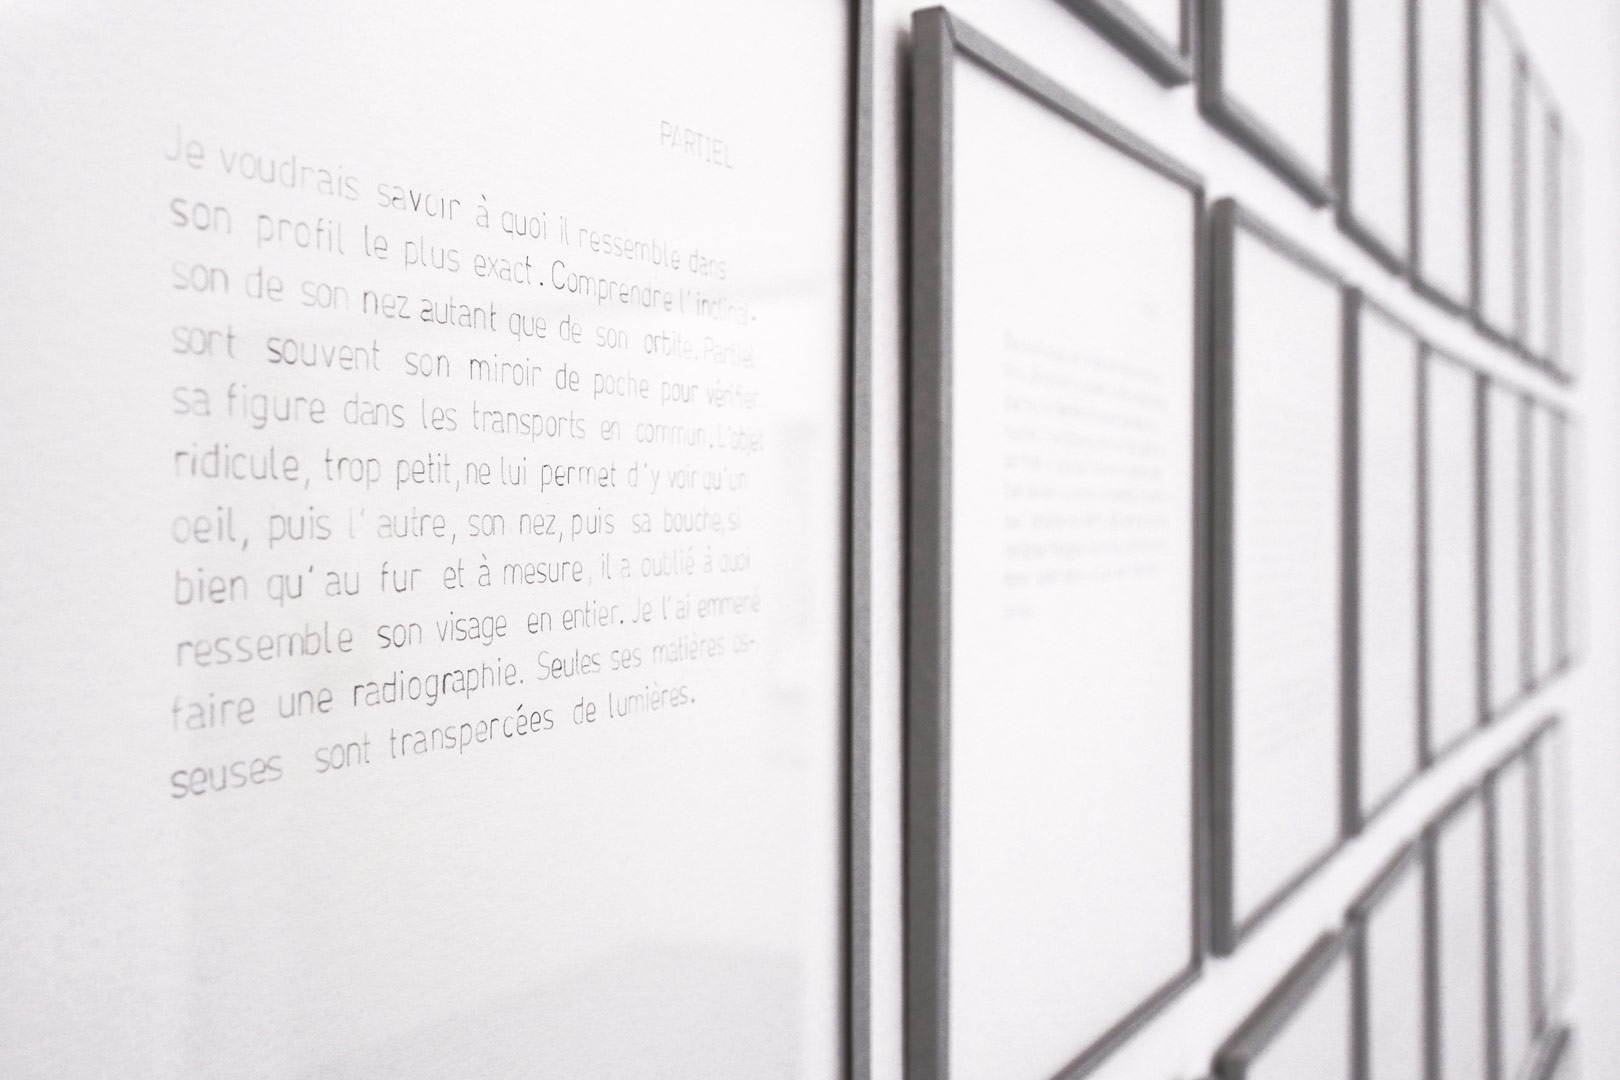 Focus resserré de l'installation intitulée "Soliloques" détaillant les 40 textes tracés au graphite à l'aide d'un normographe. Les textes sont encadrés et bordés du même papier bleu pale que les boites présentent dans l'installation.